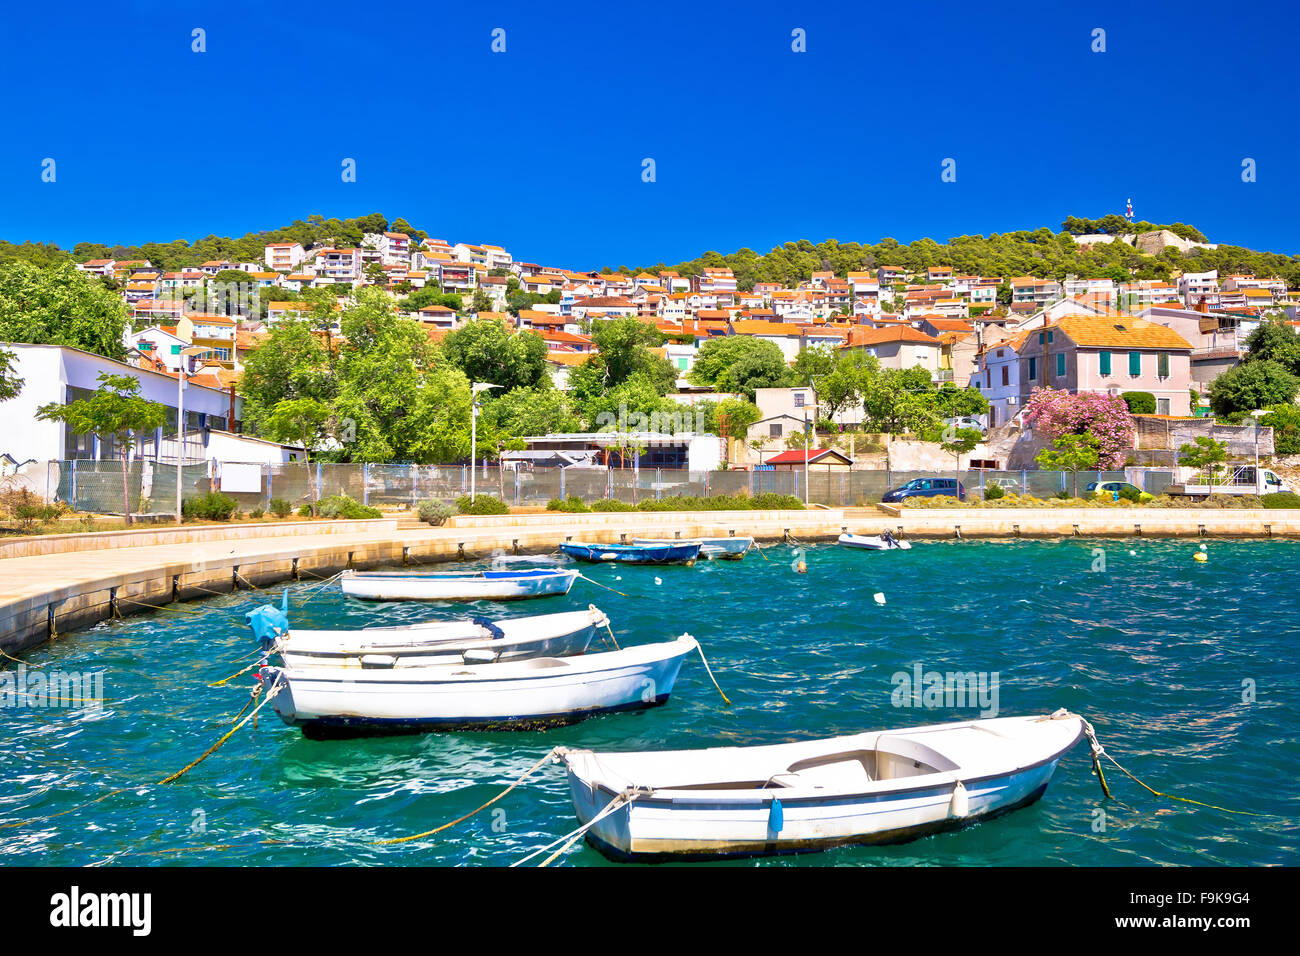 City of Sibenik colorful coast, Dalmatia, Croatia Stock Photo